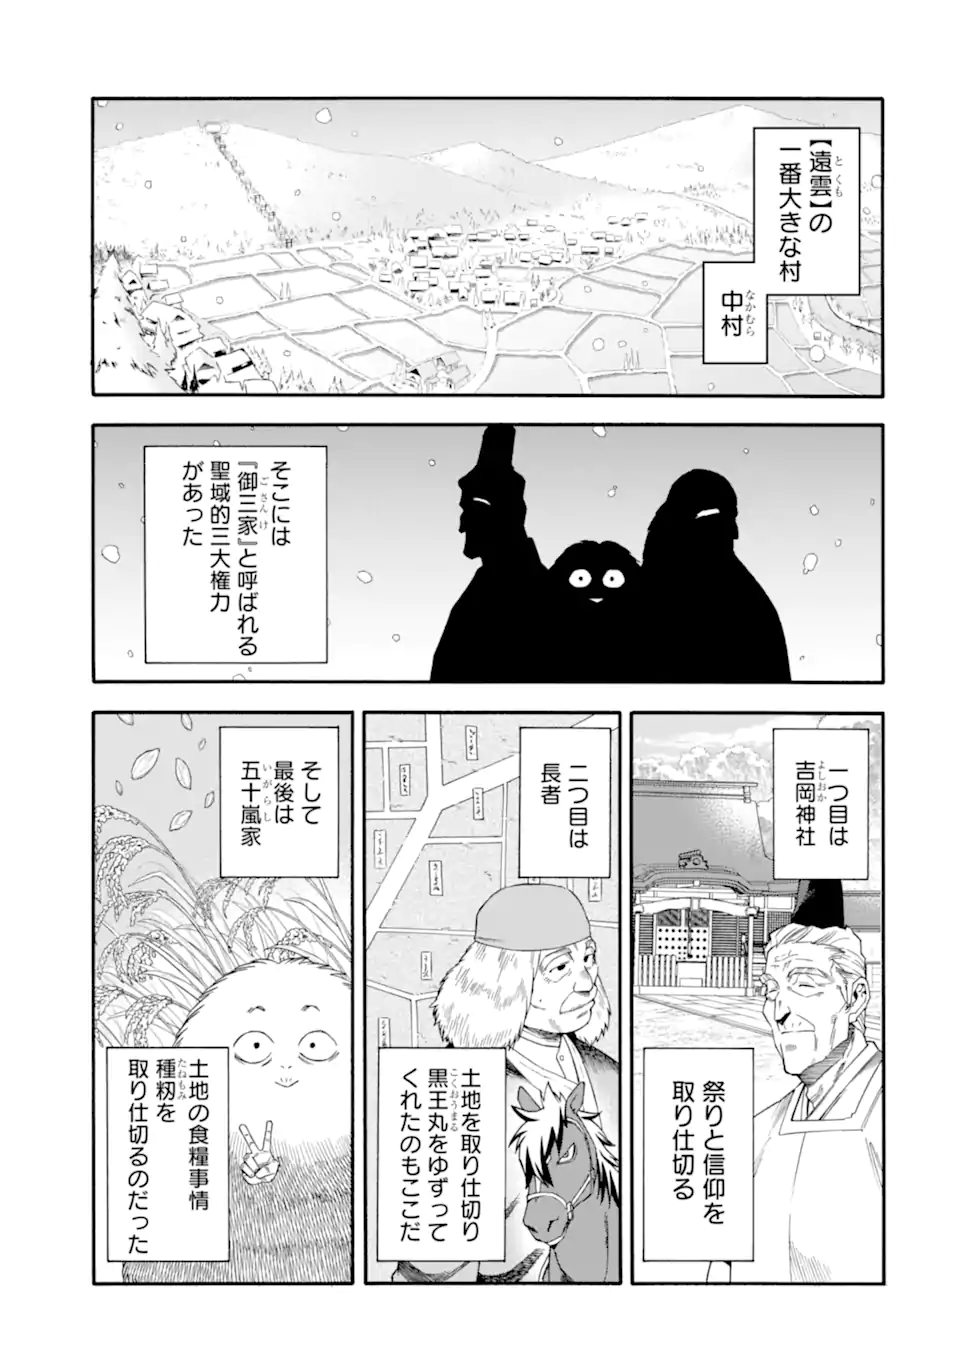 Ikusei Skill wa Mou Iranai to Yuusha Party o Kaiko Sareta no de, Taishoku Kingawari ni Moratta “Ryouchi” o Tsuyoku Shitemiru - Chapter 40.1 - Page 1